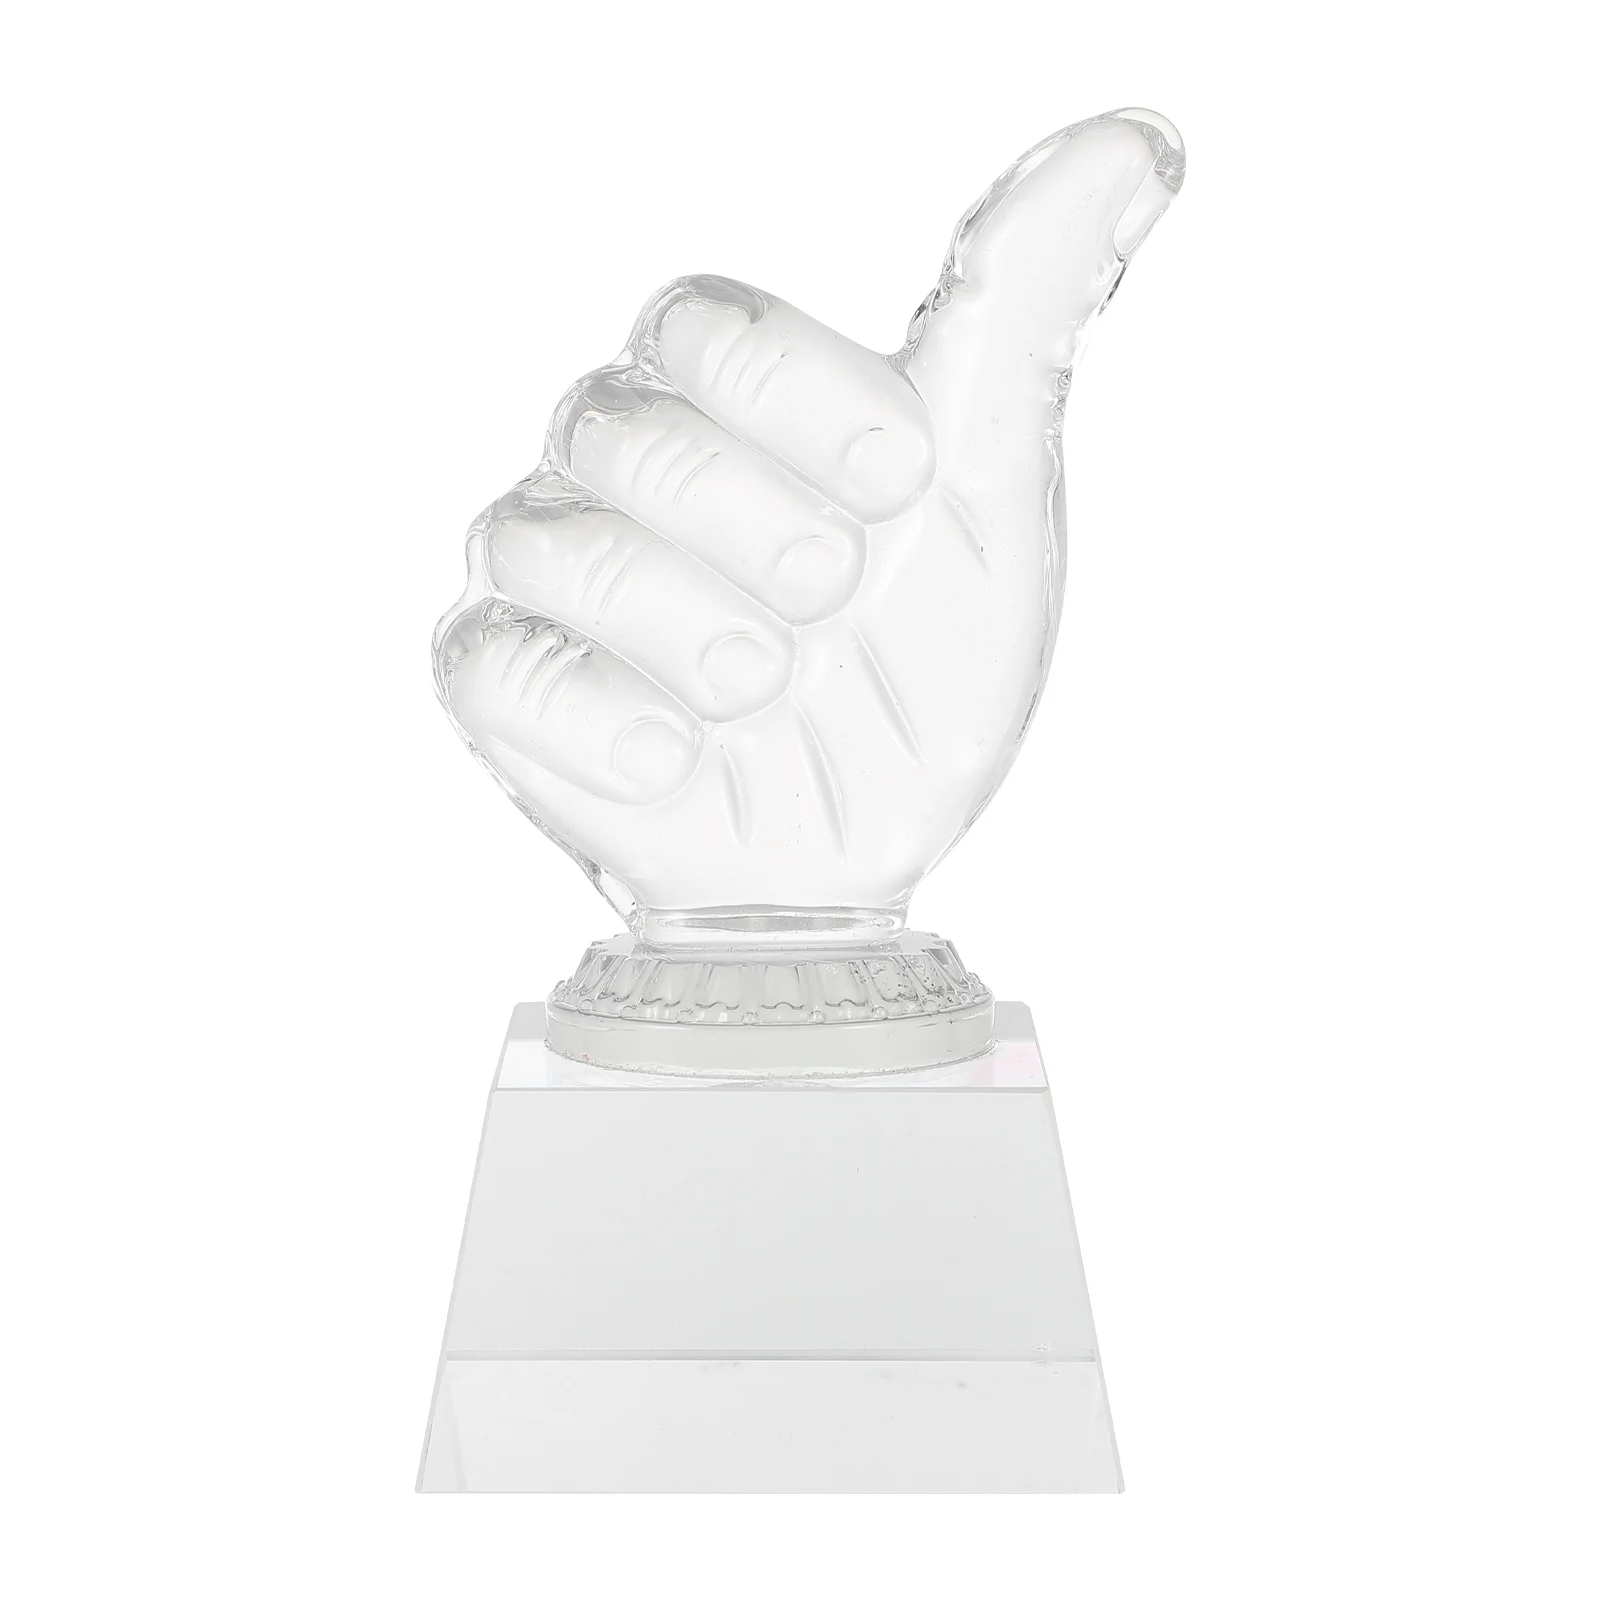 

Trophy Medal Transparent Crystal Decor Award Supply Prize Hand-shaped Delicate Desktop